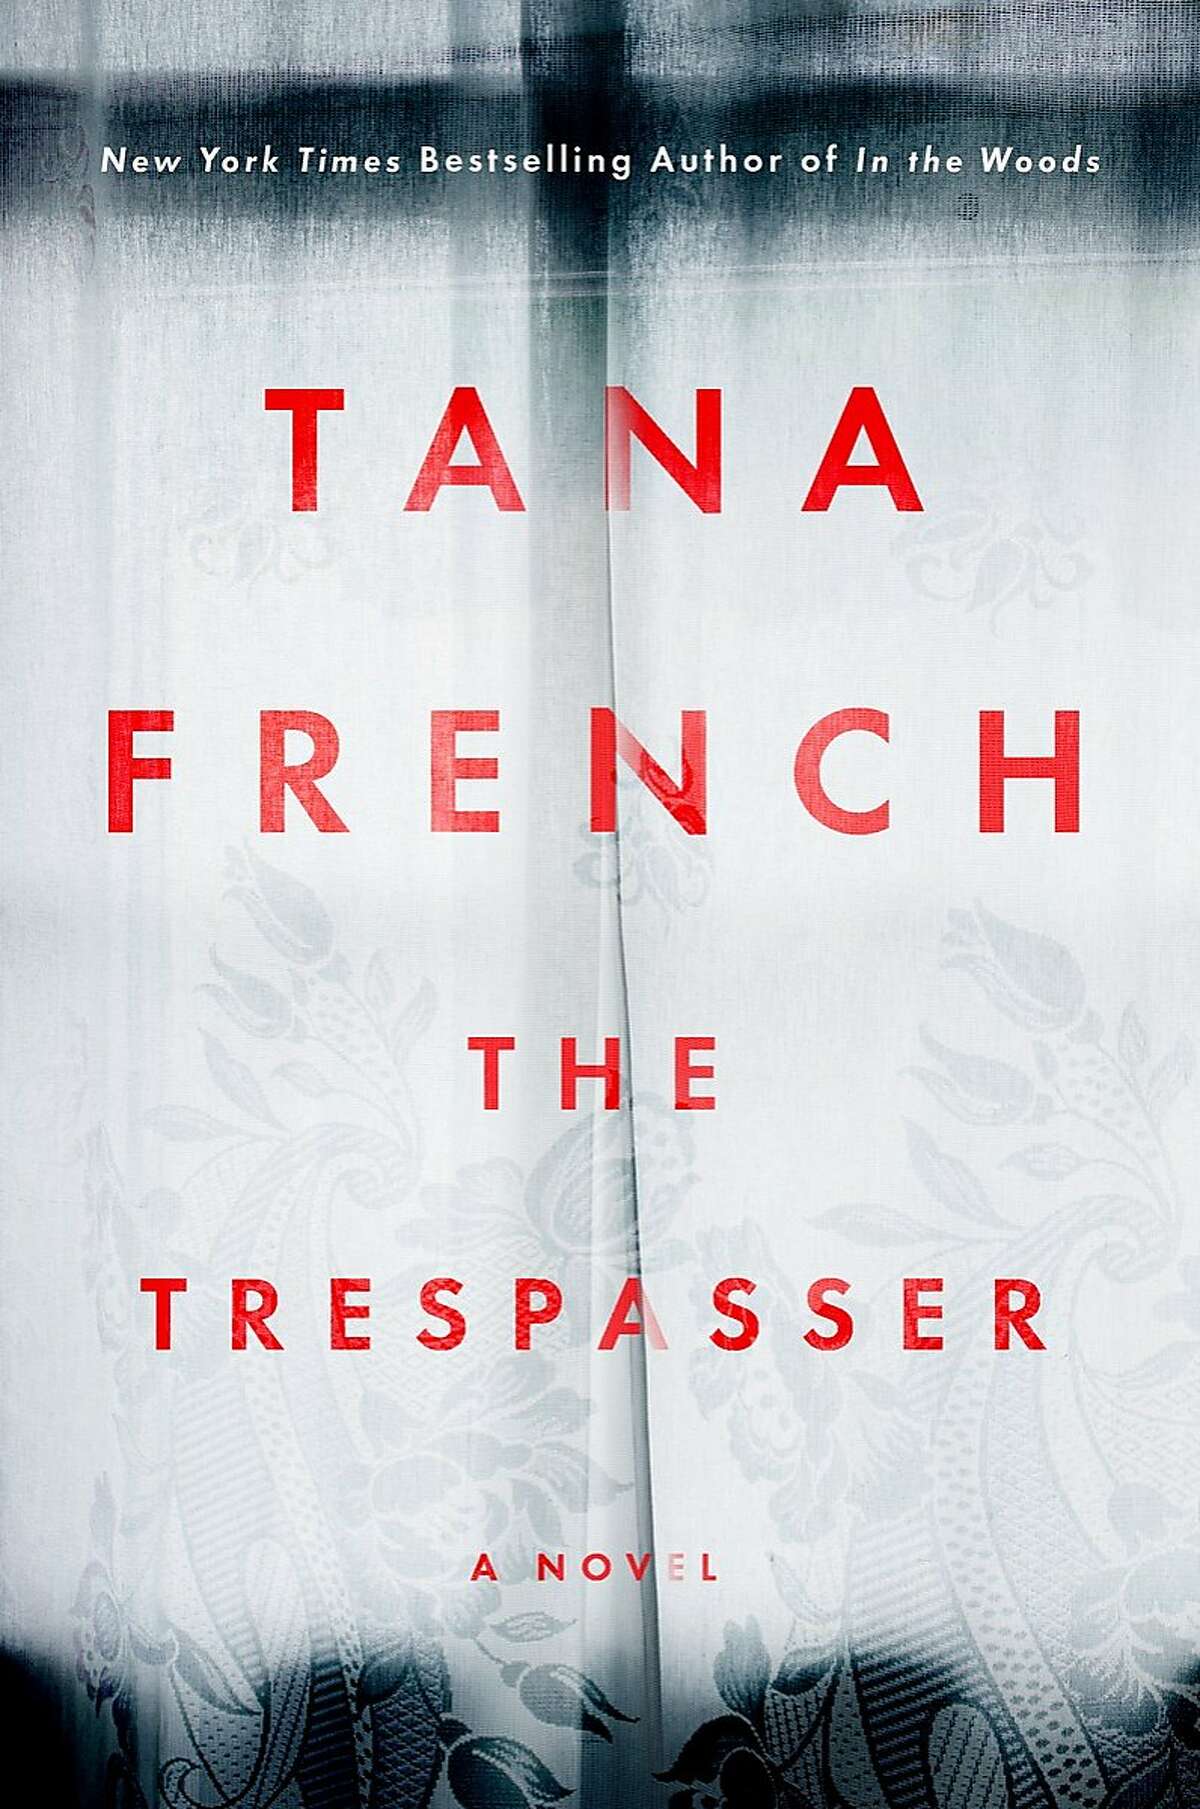 "The Trespasser"